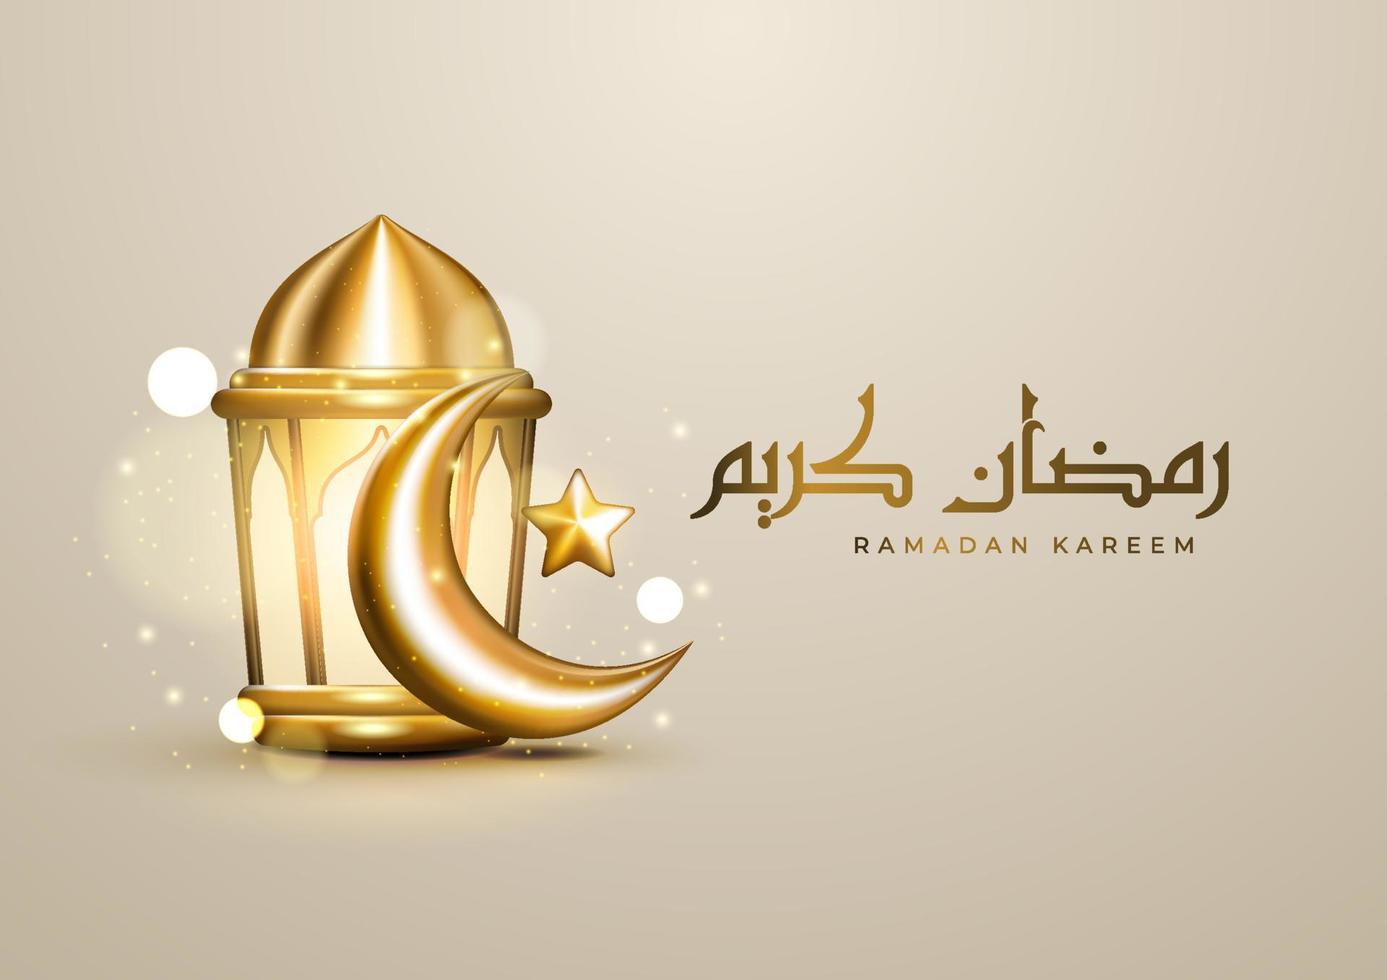 saudações realistas do ramadã islâmico com caligrafia árabe, crescente dourado, estrela e lanterna. fundo de luxo ramadan kareem vetor